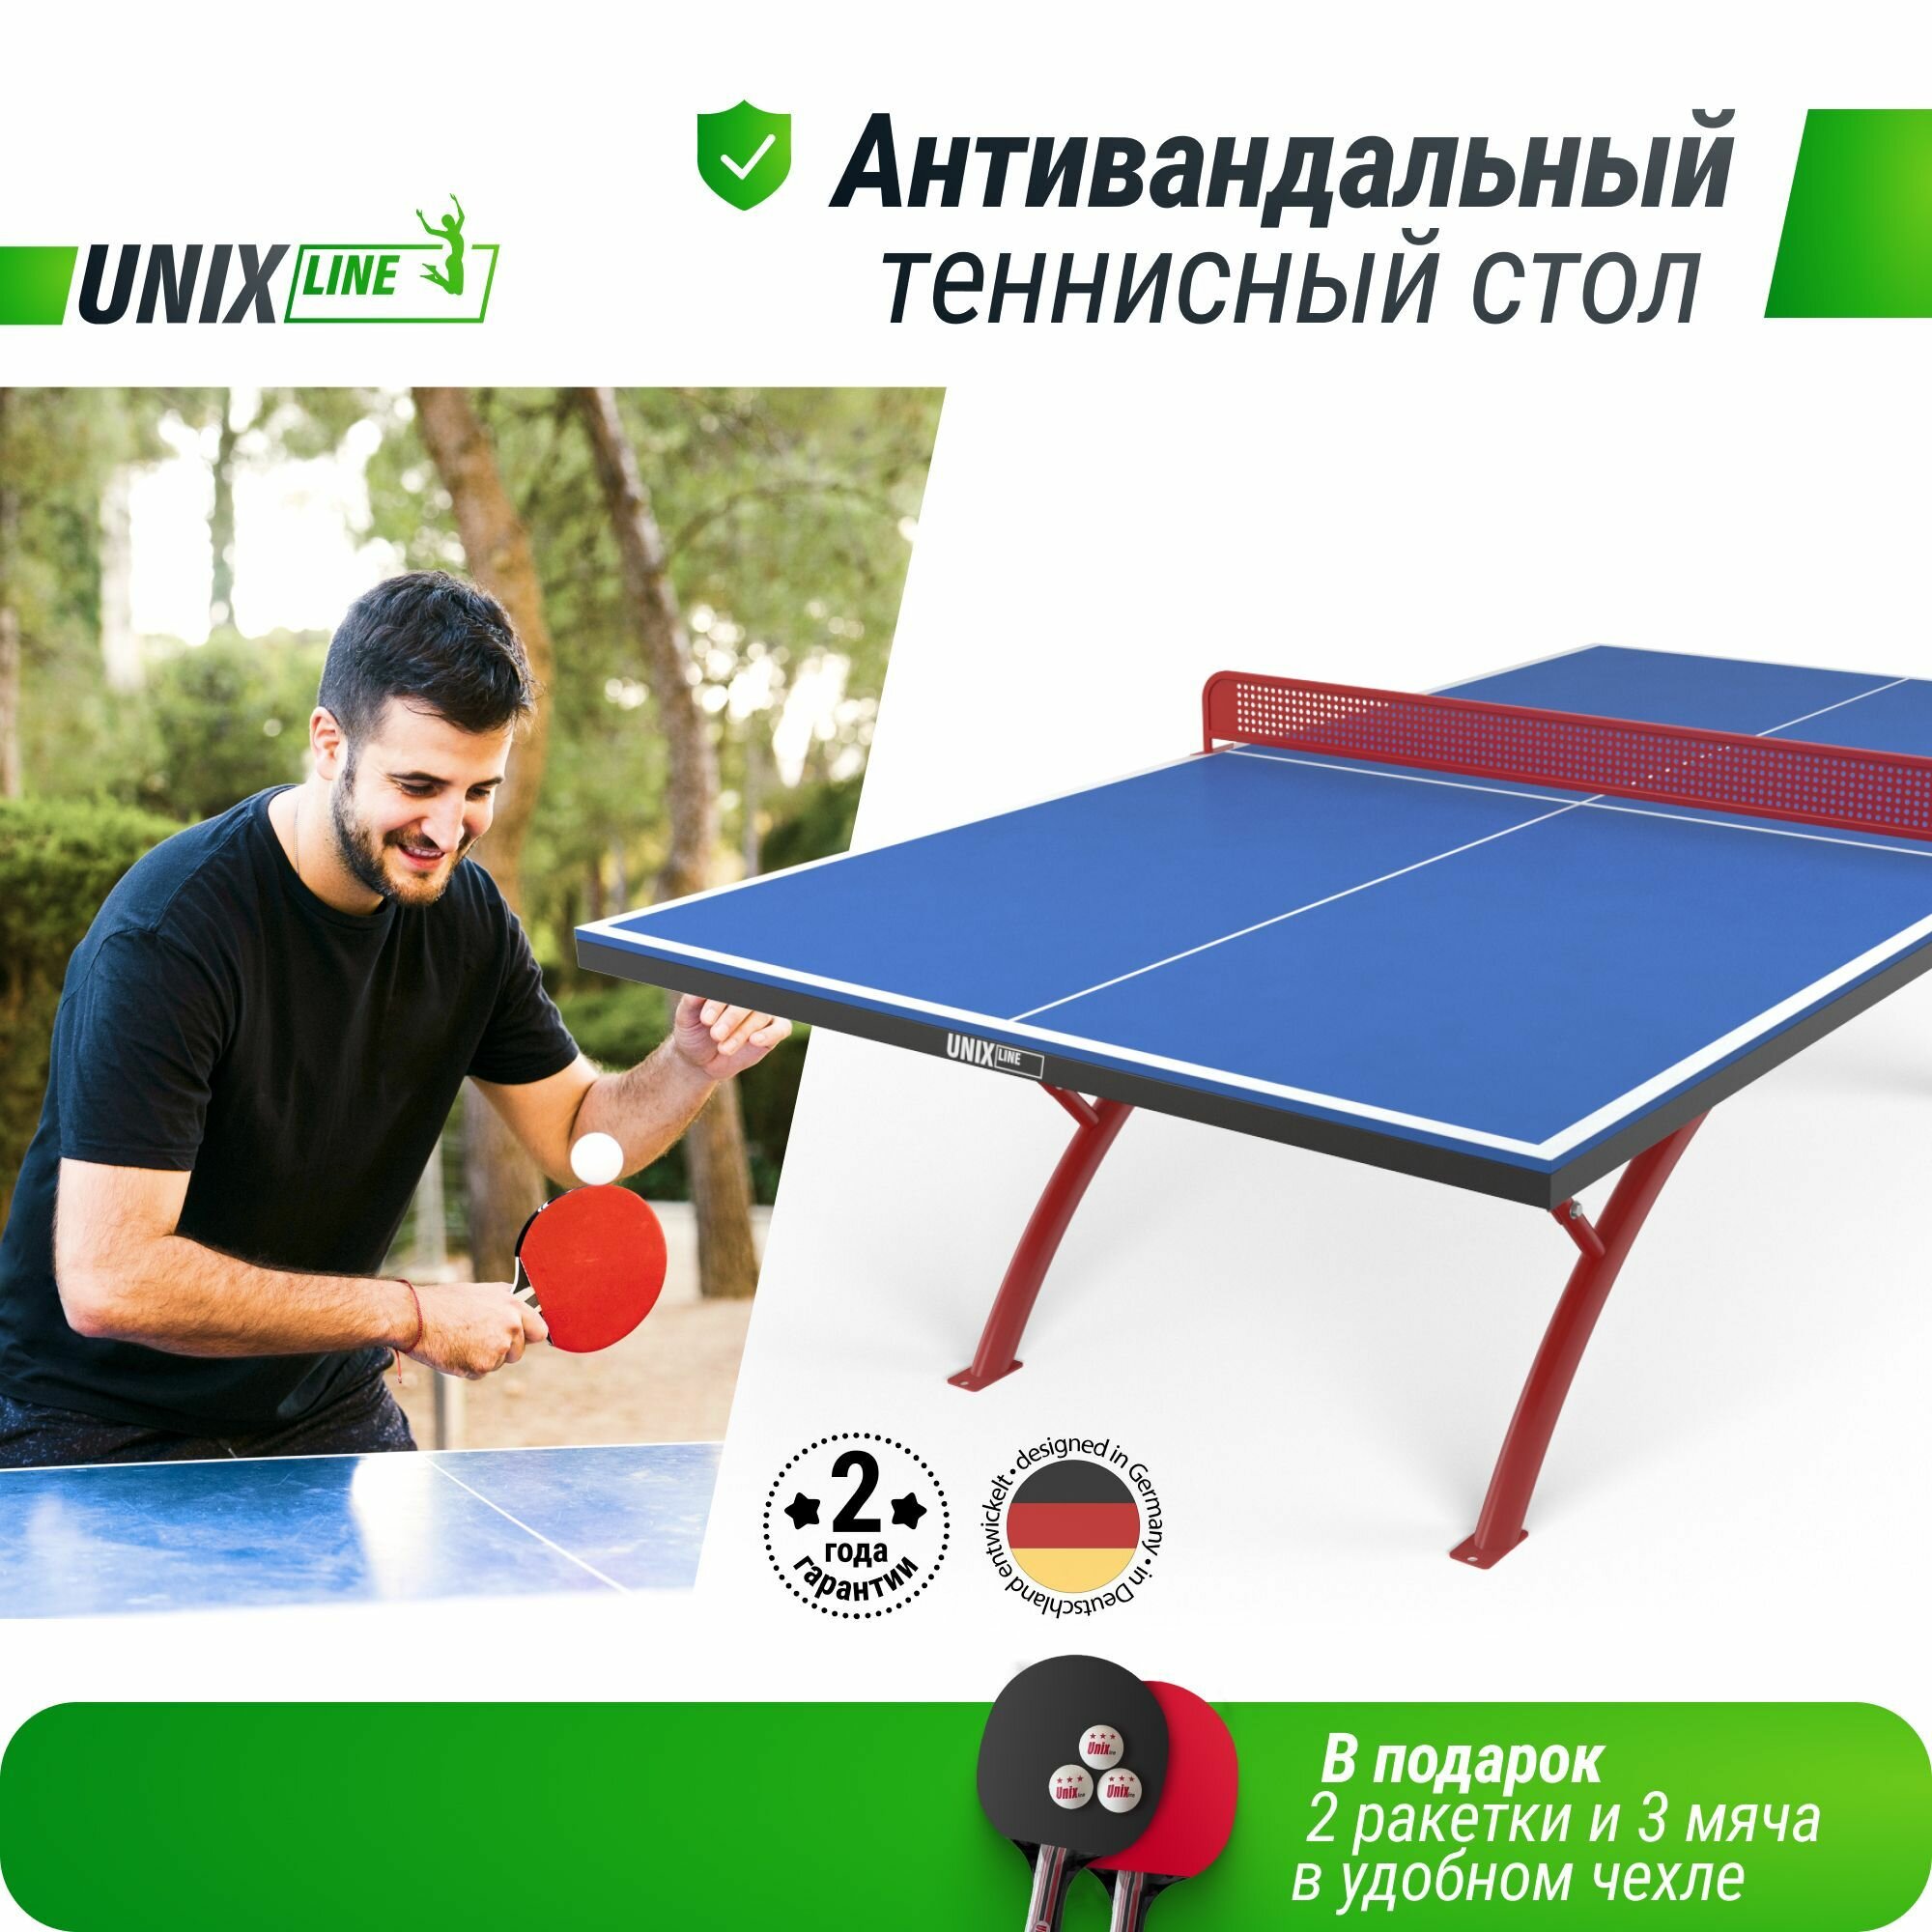 Антивандальный теннисный стол для игры в настольный теннис UNIX Line 14 mm SMC (Blue/Red), антибликовое покрытие, в комплекте сетка, 2 ракетки, 3 мяча UNIXLINE